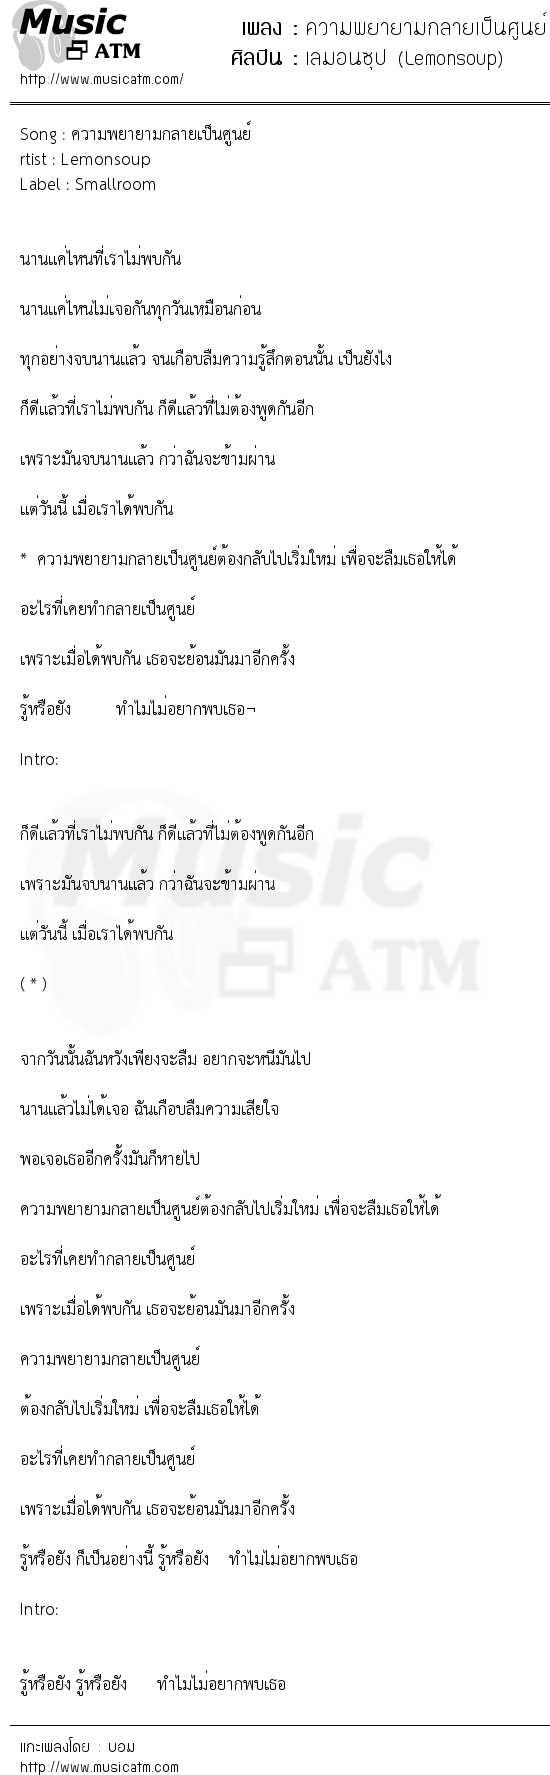 เนื้อเพลง ความพยายามกลายเป็นศูนย์ - เลมอนซุป (Lemonsoup) | เพลงไทย